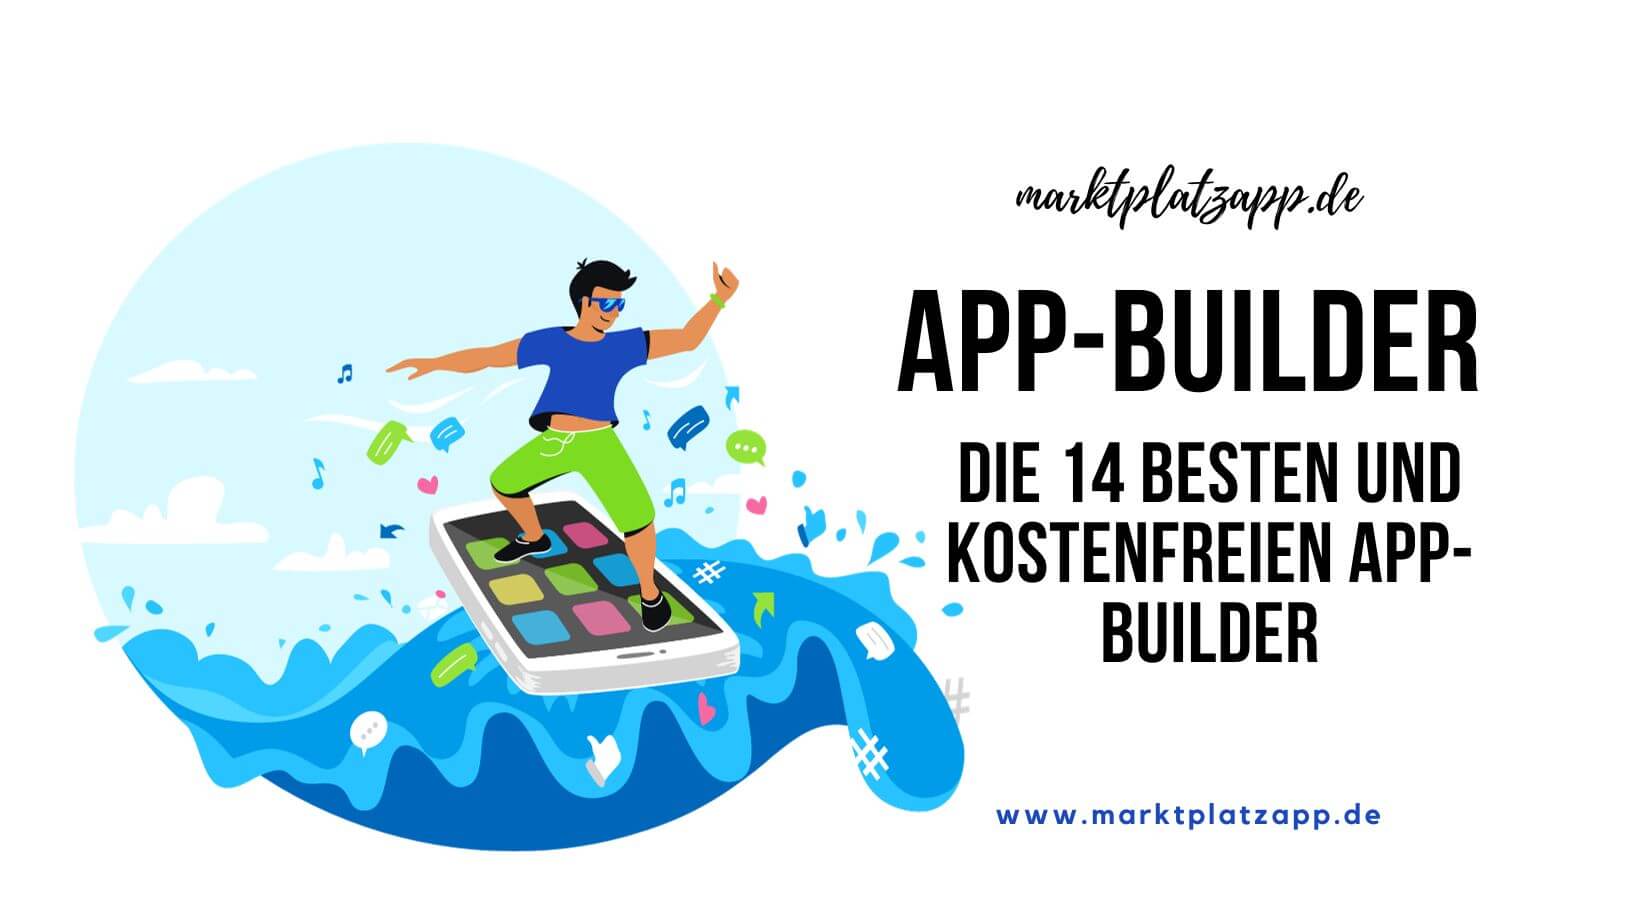 die 14 besten und kostenfreien App-Builder